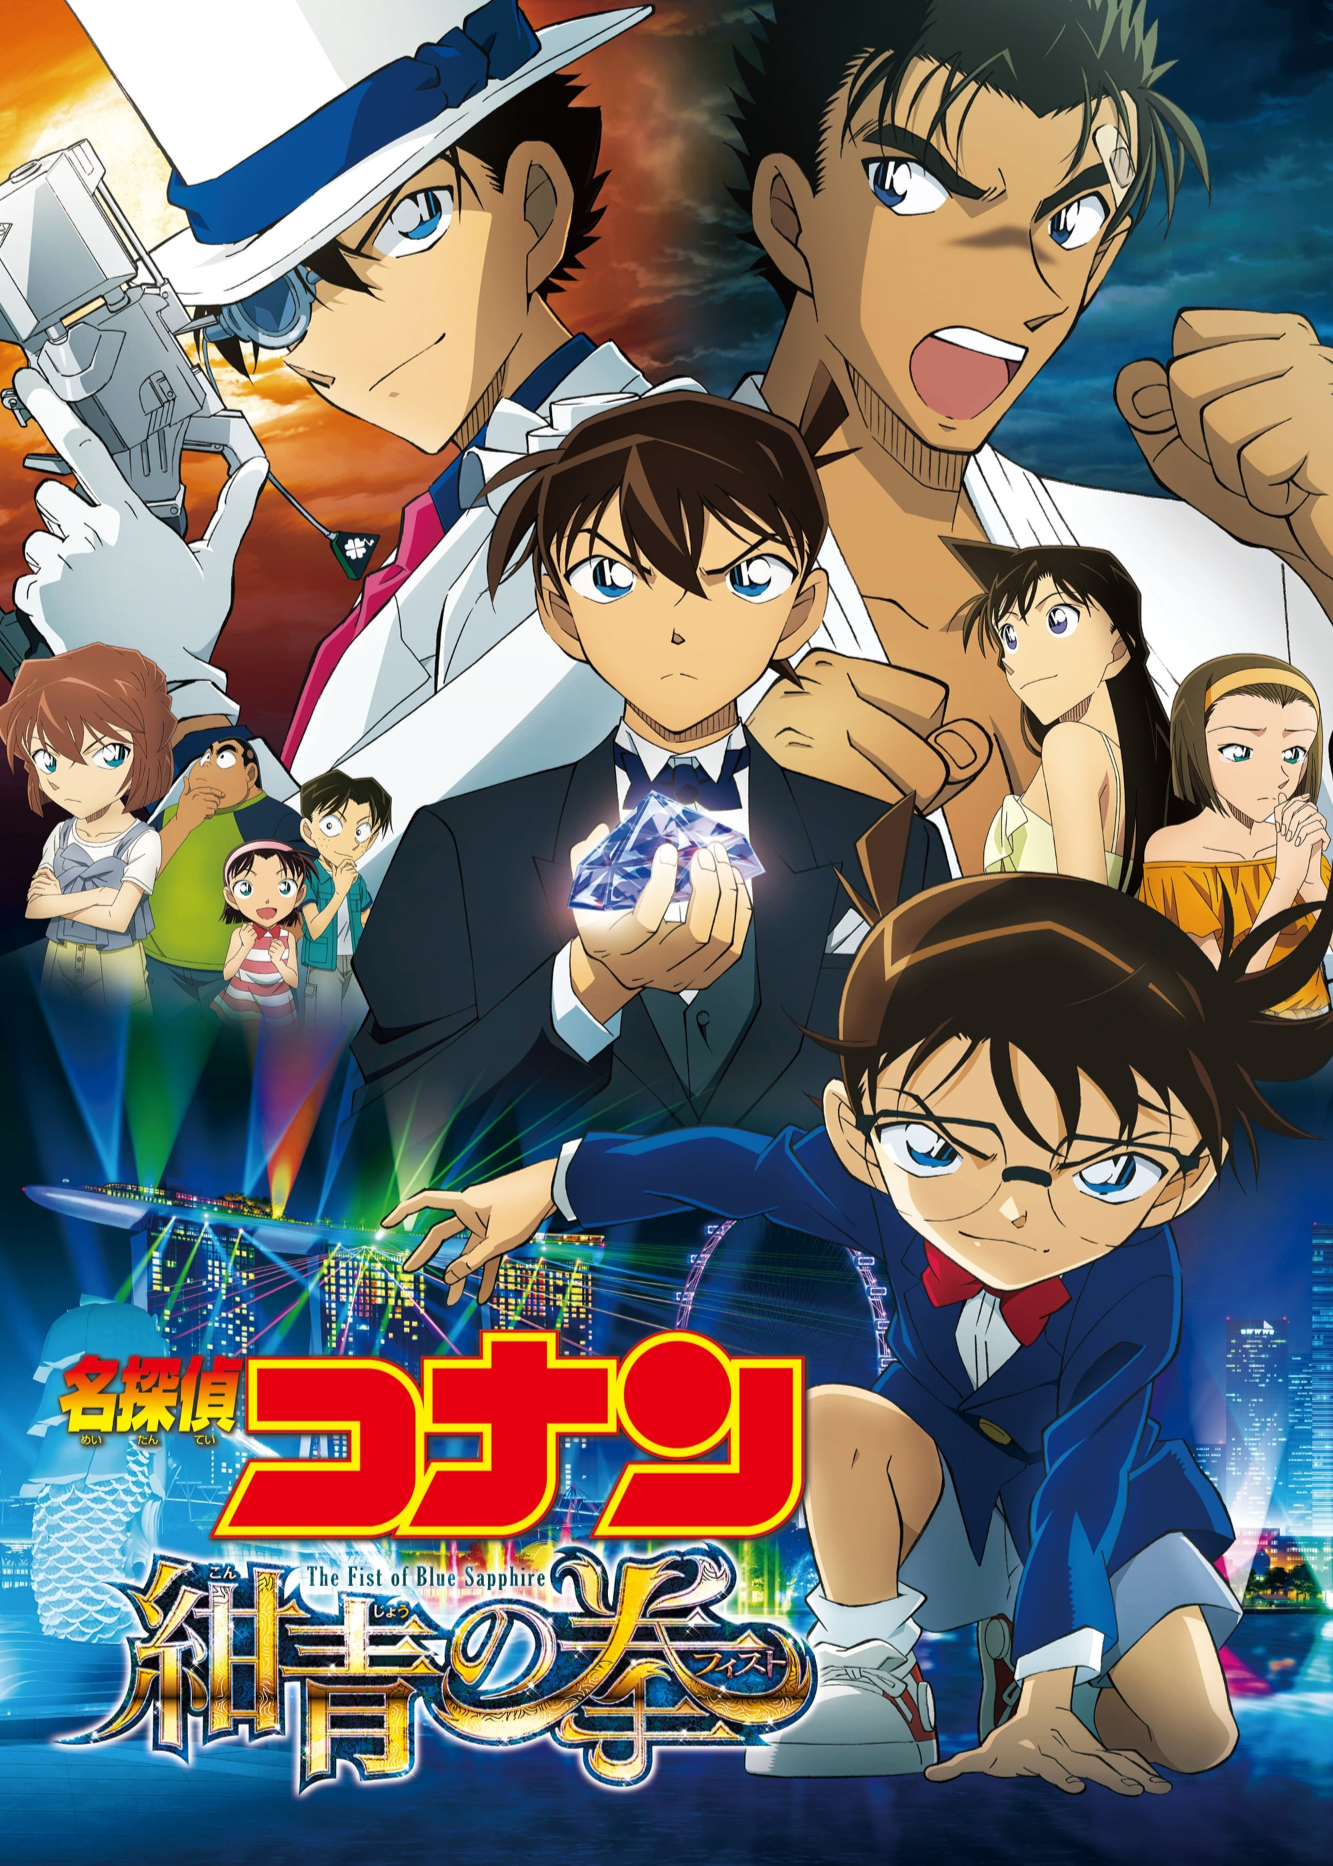 Xem Phim Thám Tử Lừng Danh Conan: Cú Đấm Sapphire Xanh (Detective Conan: The Fist of Blue Sapphire)